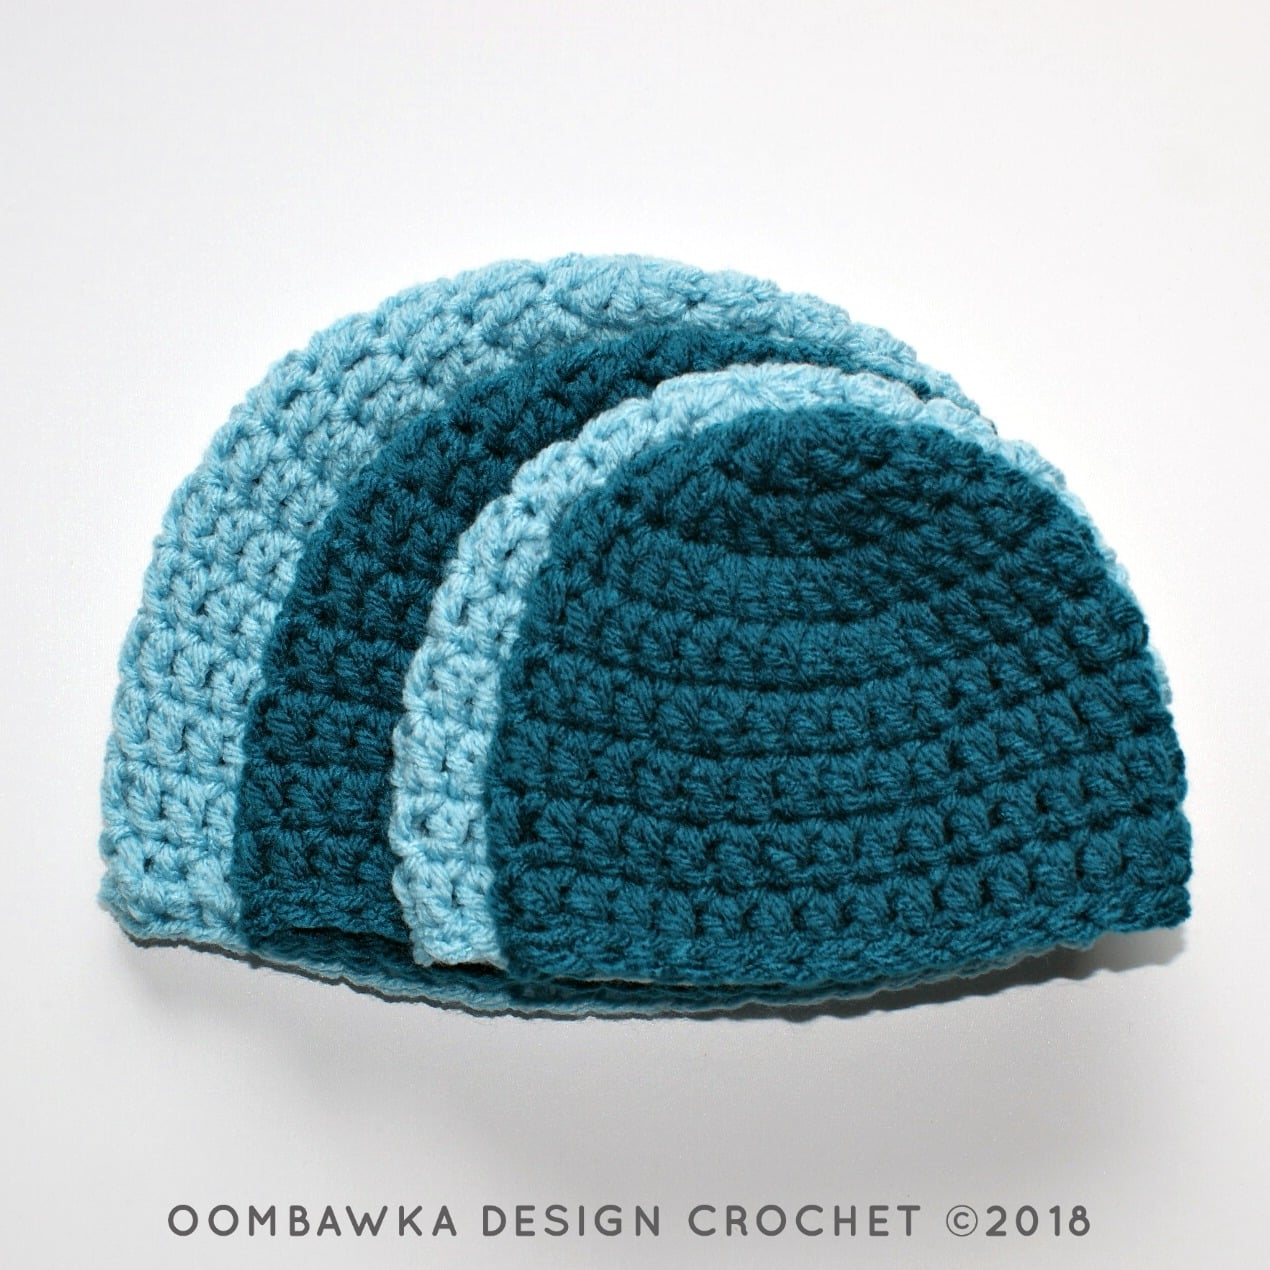 Crochet Bobble Hat Pattern Free Simple Double Crochet Hat Pattern Oombawka Design Crochet